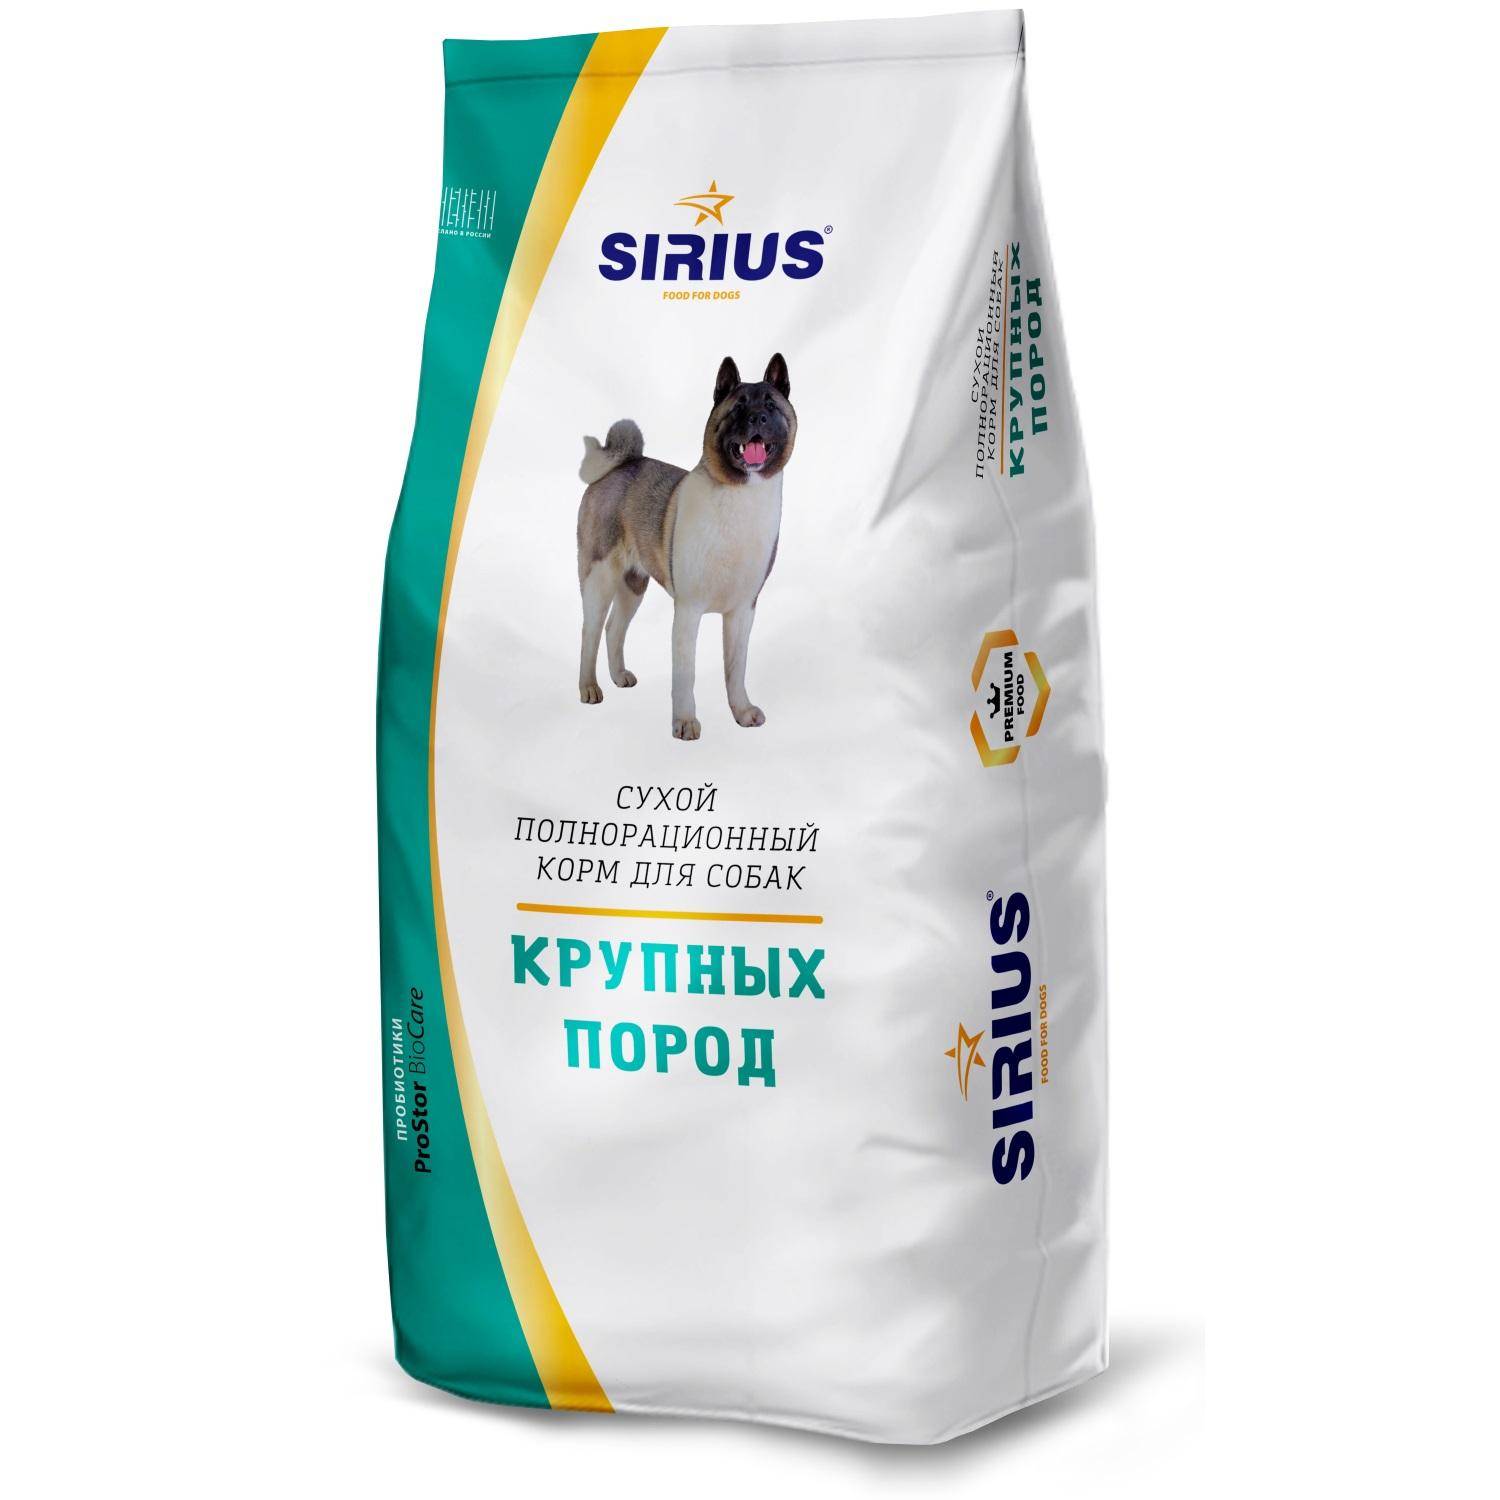 Корм для собак сириус (sirius): отзывы, состав, цена